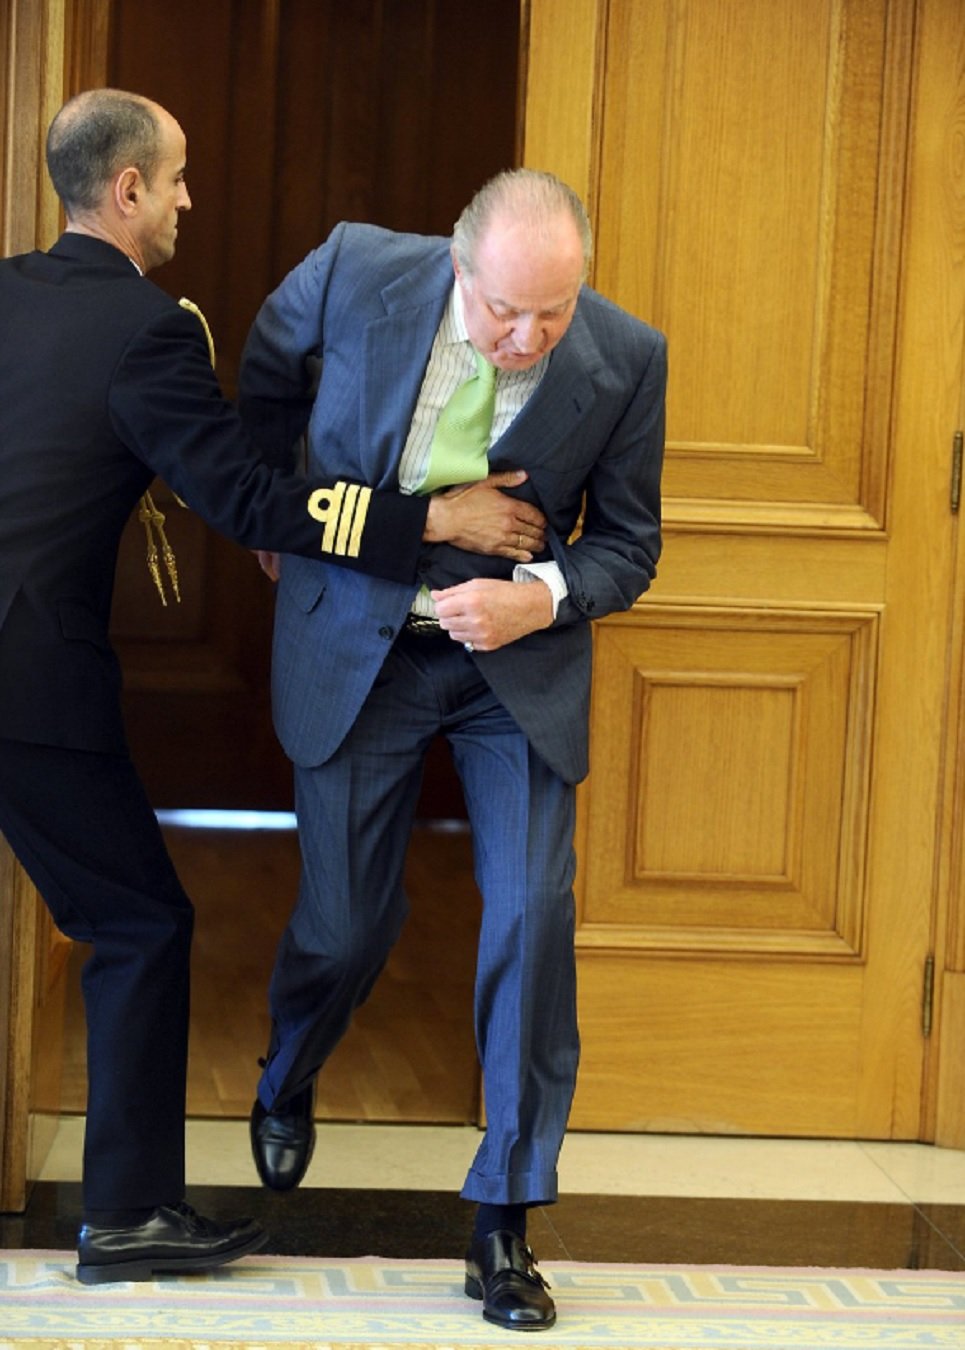 Joan Carles torna a caure de lloros als 82 anys i l'escorta no hi pot fer res